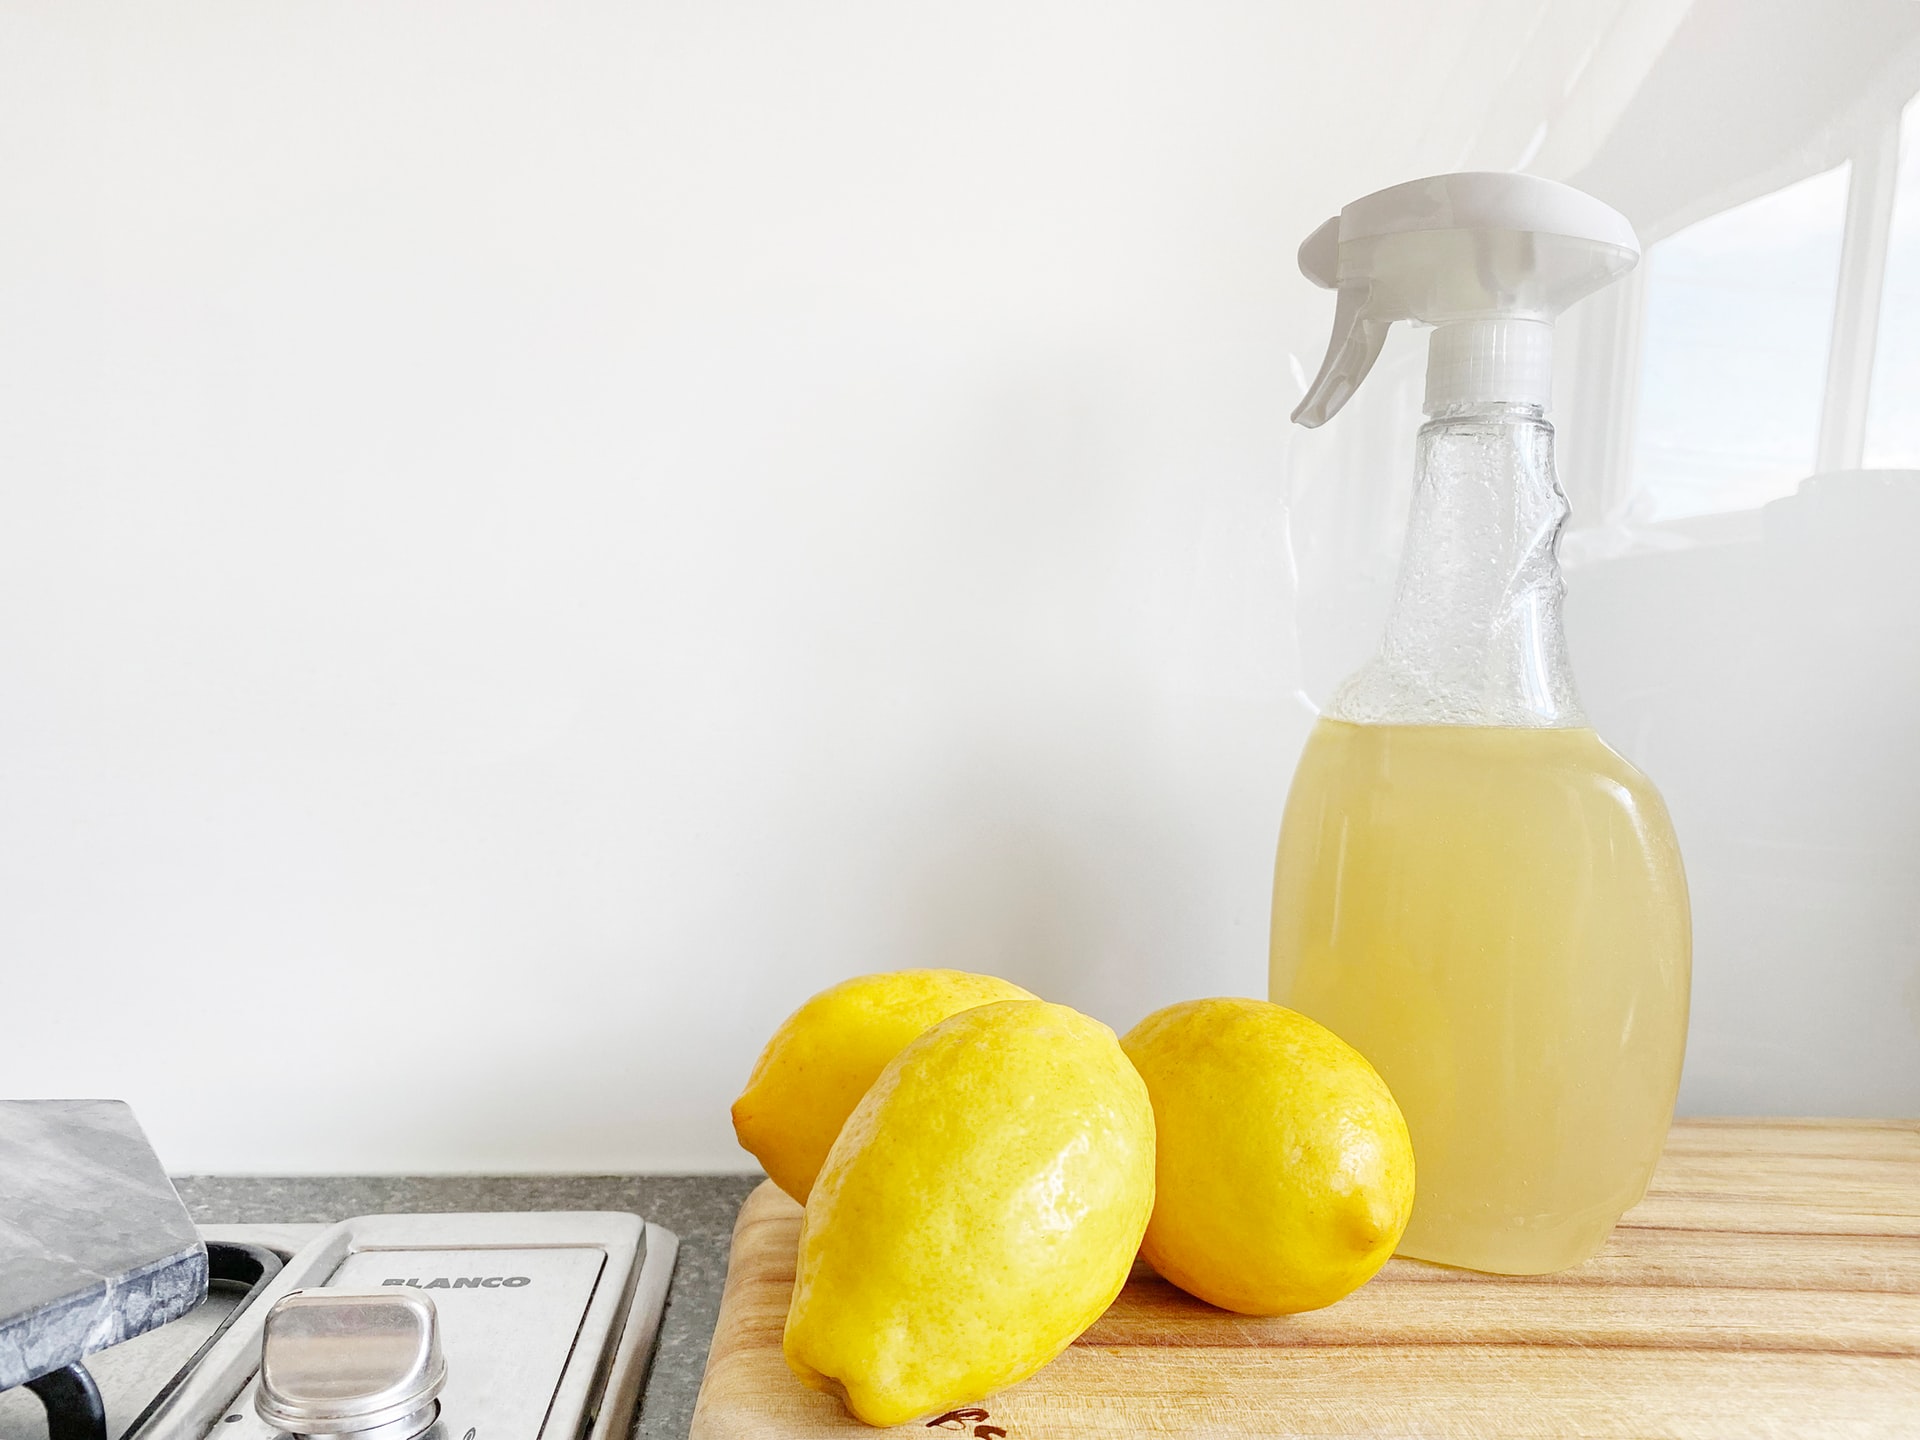 Citroner och sprayflaska på en diskbänk.